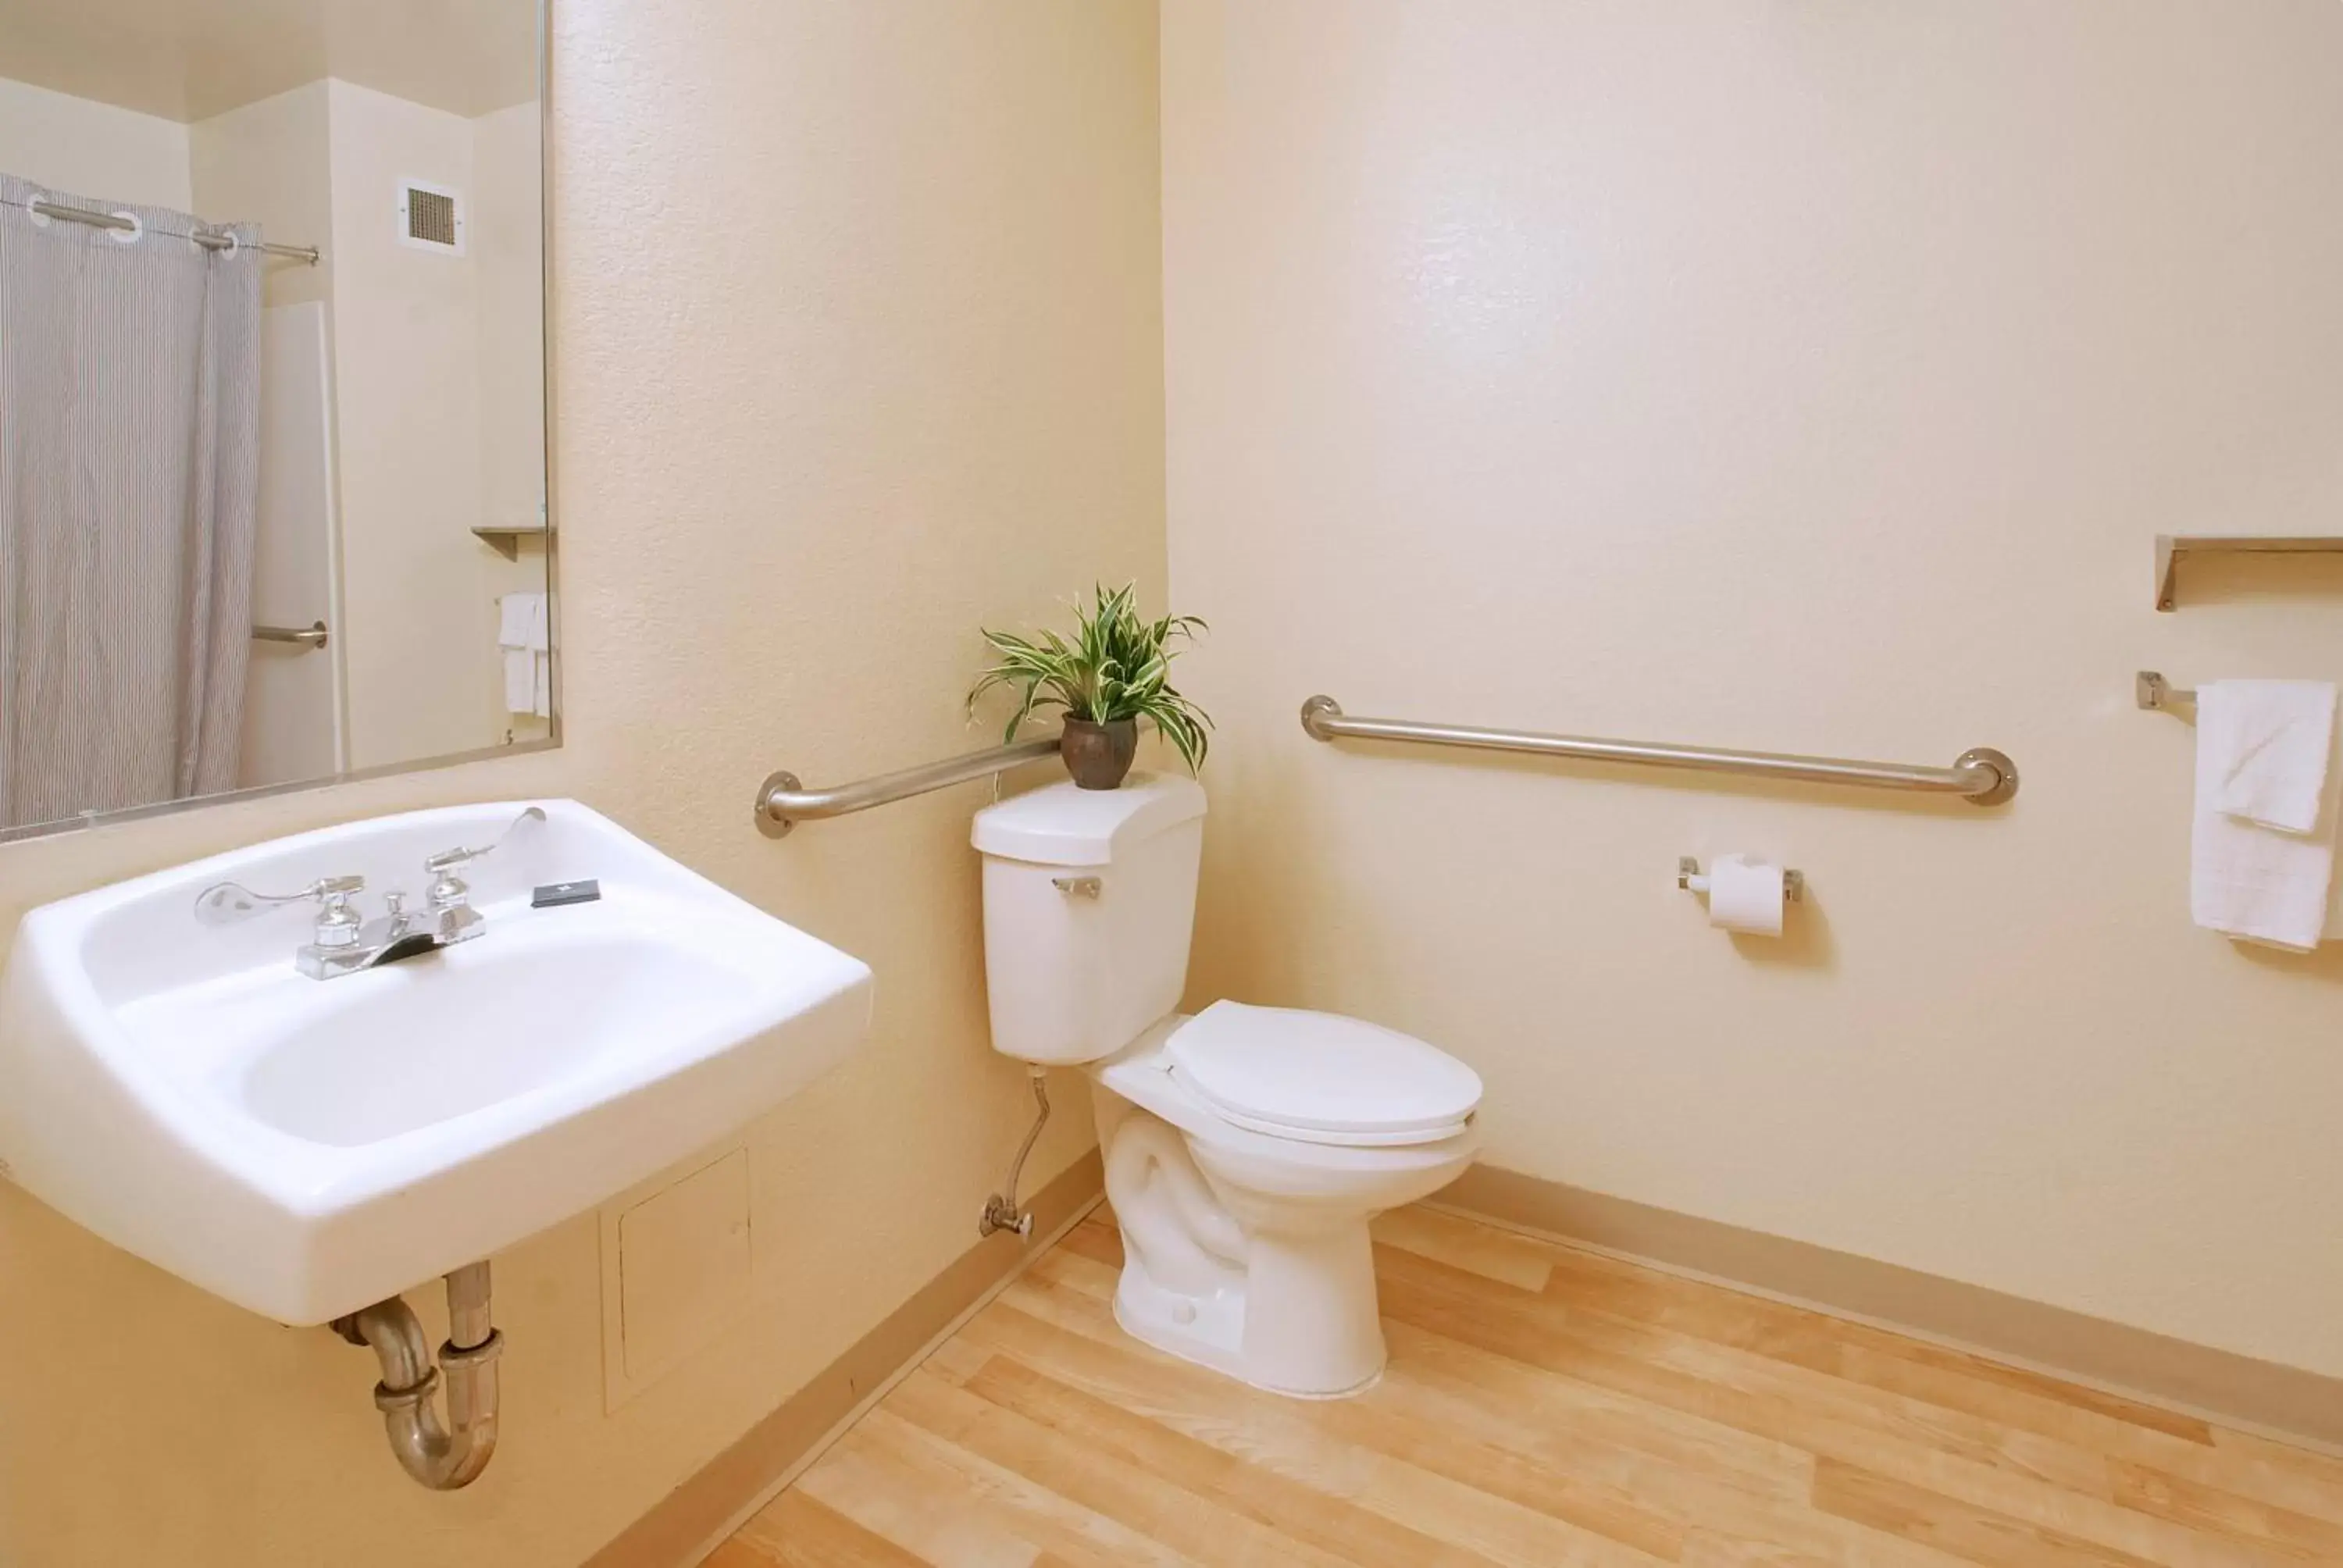 Toilet, Bathroom in Extended Stay America Suites - Cincinnati - Blue Ash - Kenwood Road